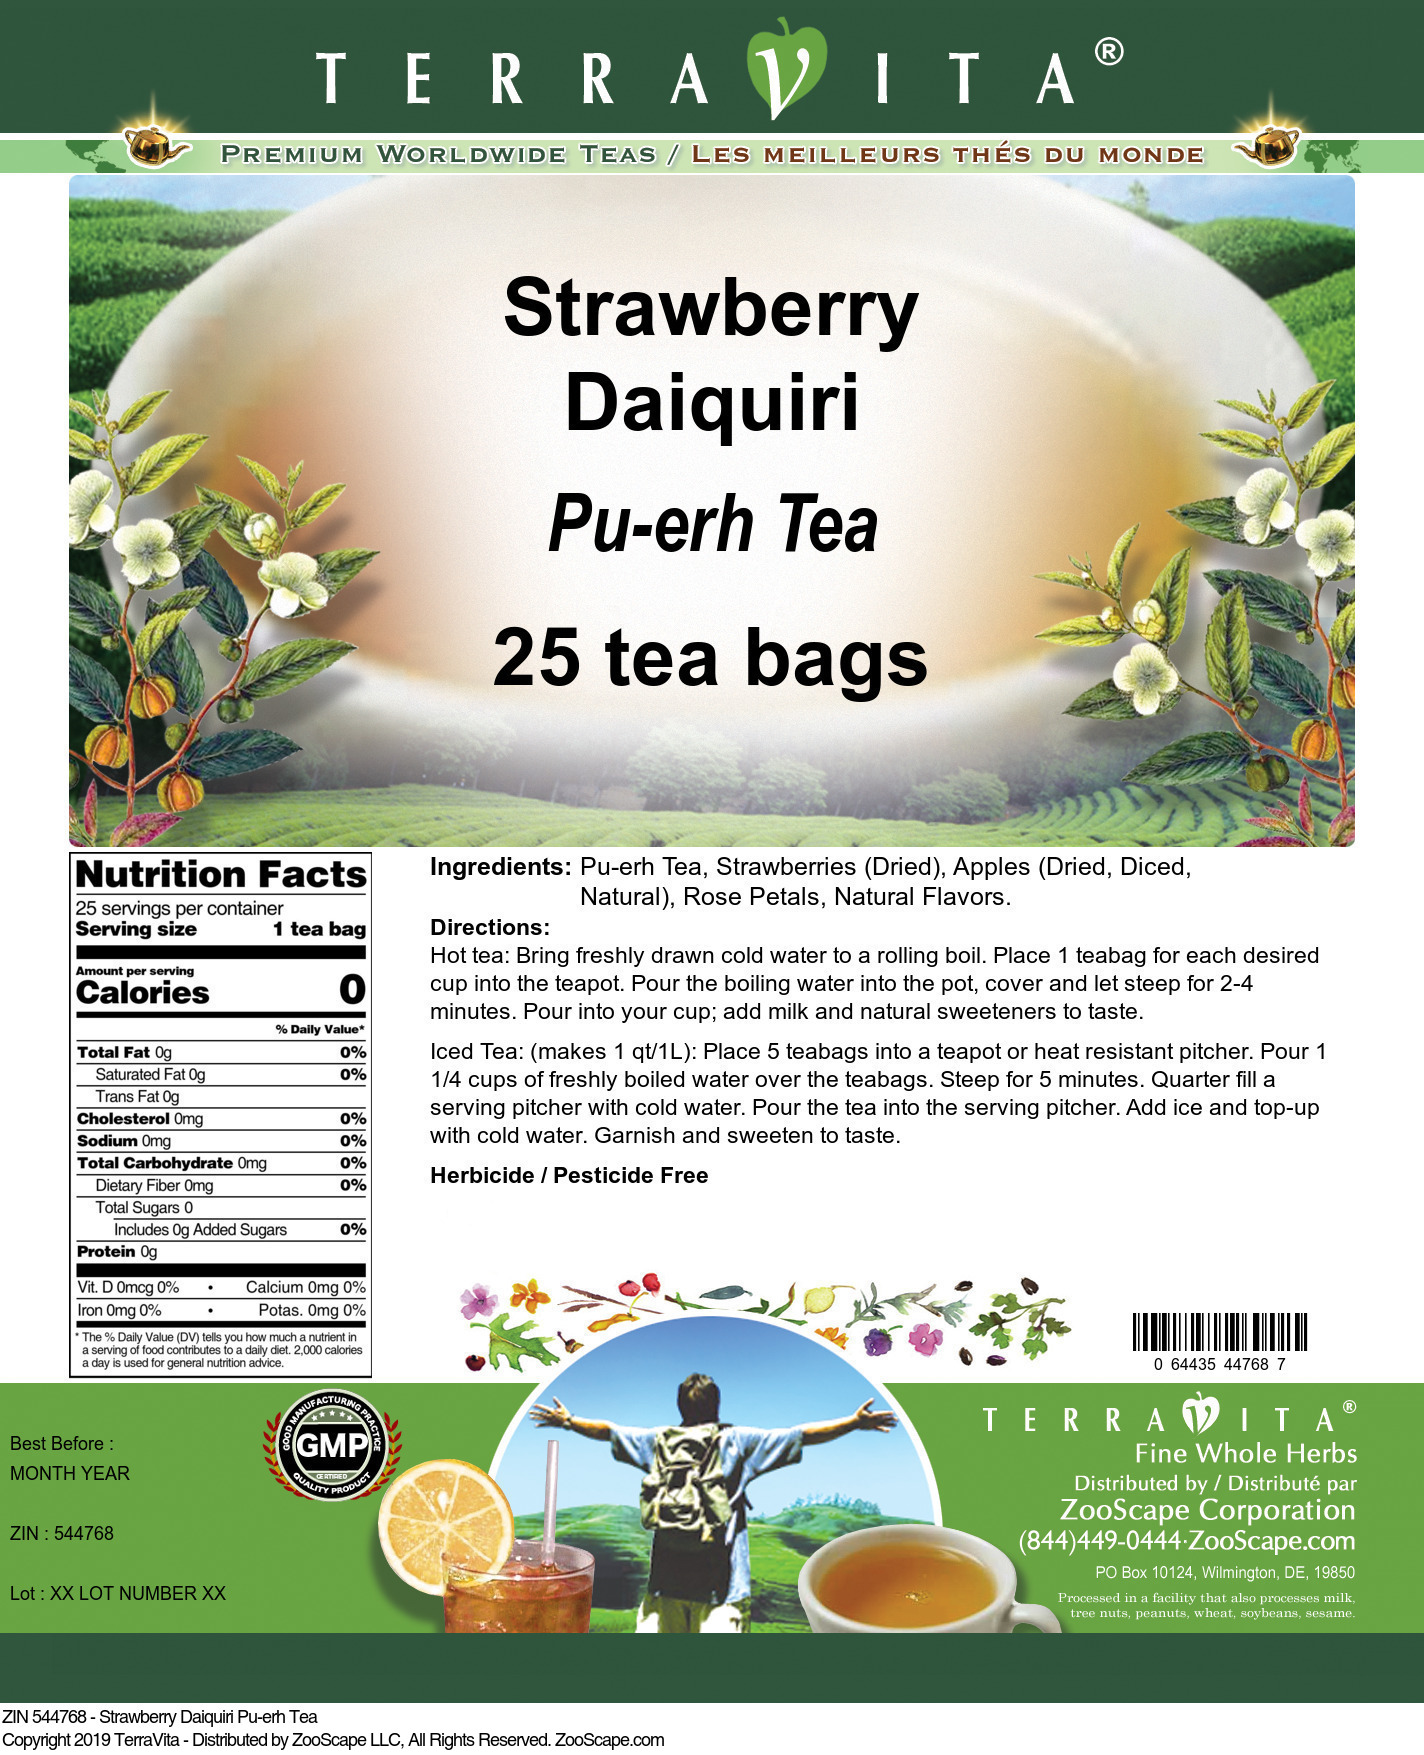 Strawberry Daiquiri Pu-erh Tea - Label